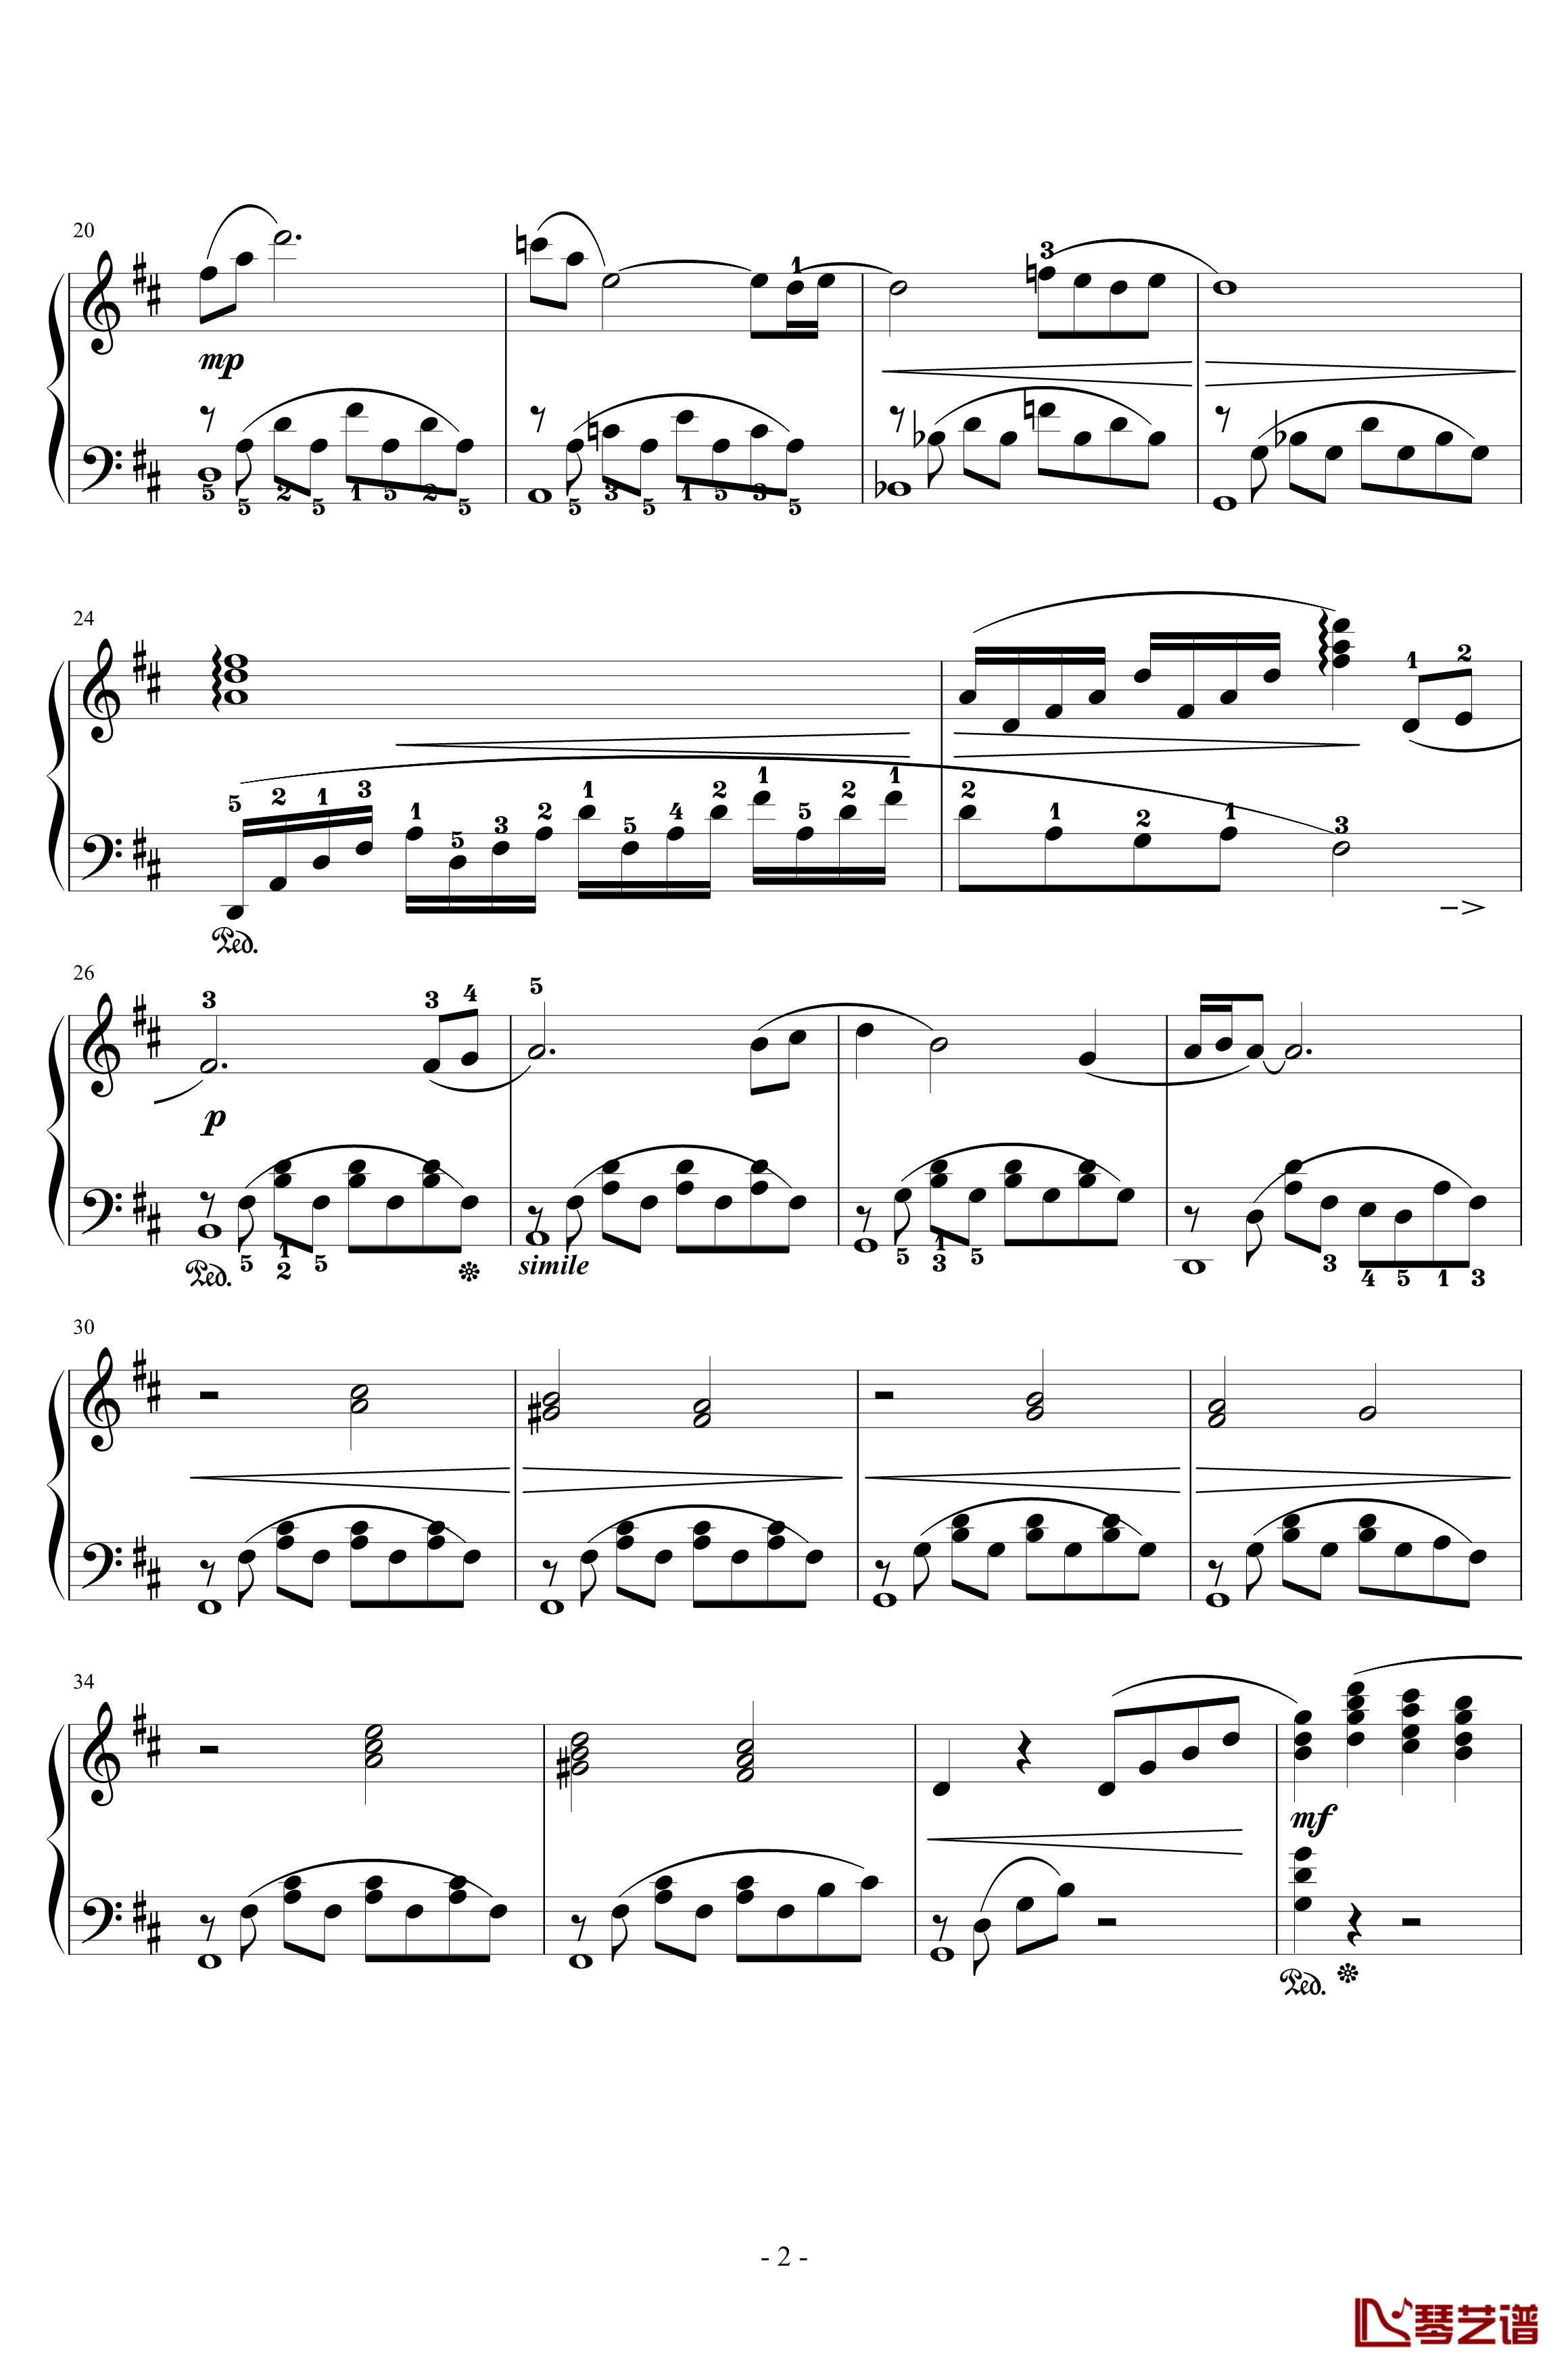 最终幻想7爱丽丝的主题钢琴谱-完整版本-植松伸夫2